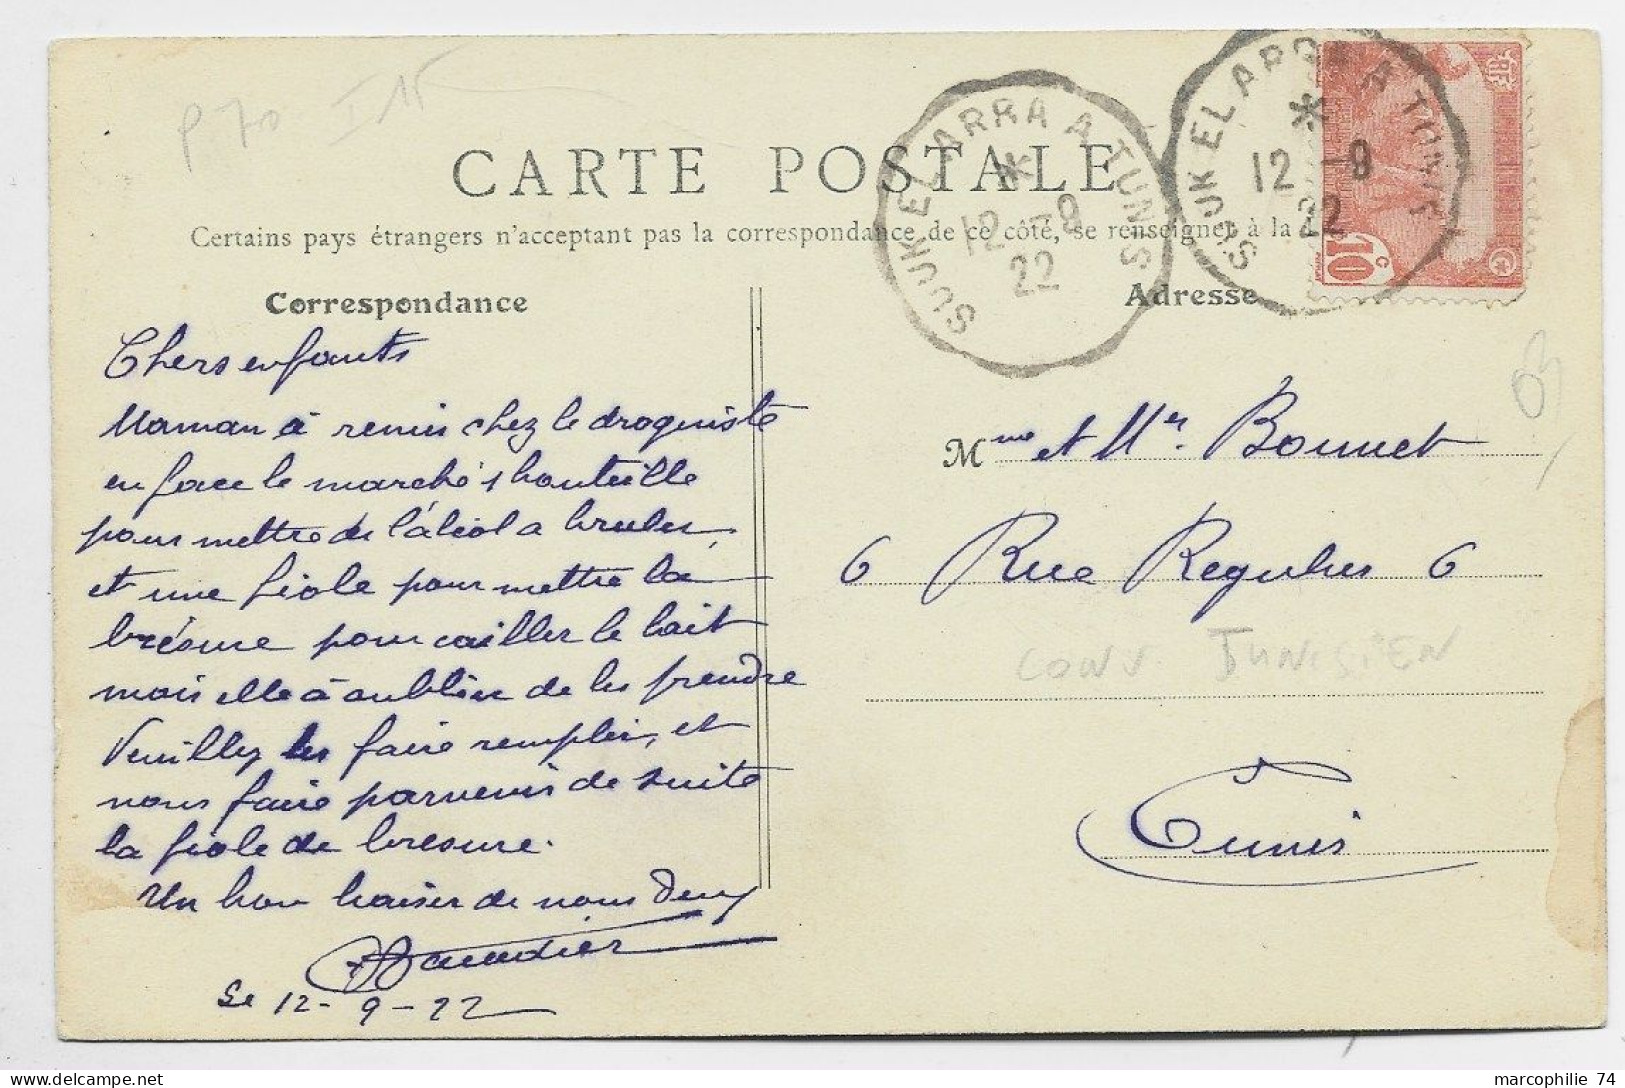 TUNISIE 10C CARTE VICHY ALLIER CONVOYEUR SOUK EL ARRA A TUNIS 12.9.1922 COTE 160€ RARE - Railway Post